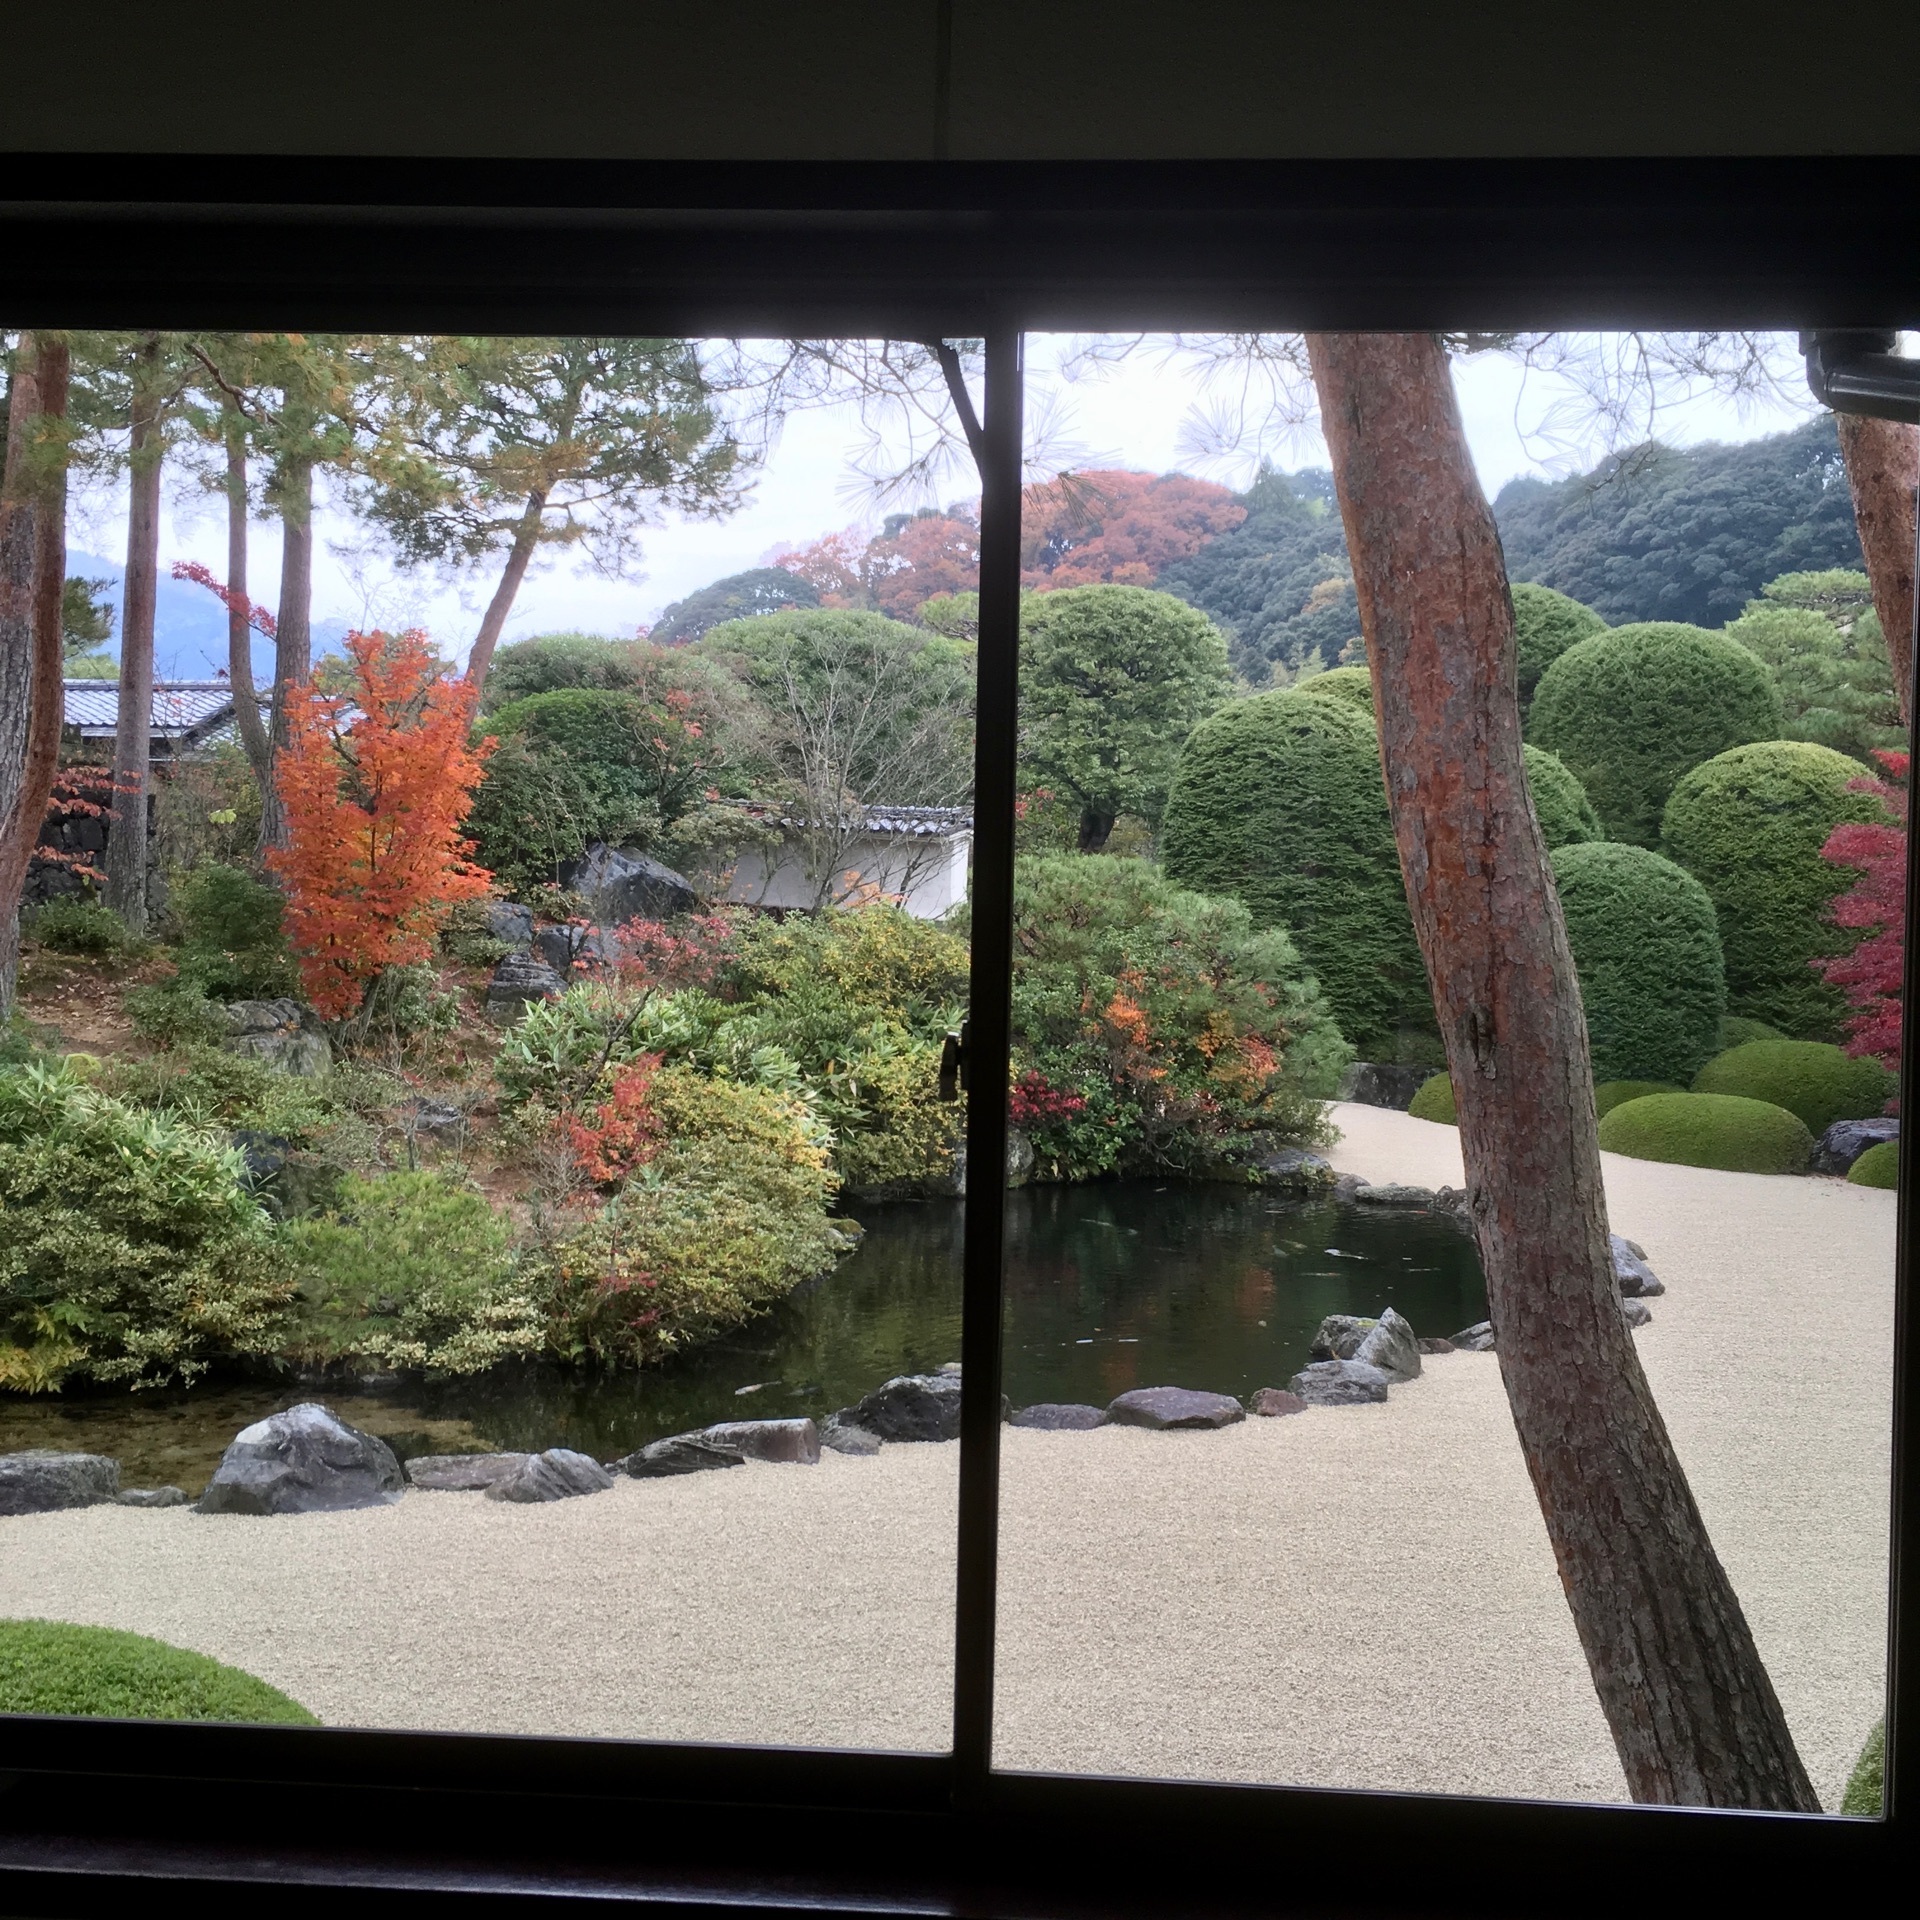 足立美術館 世界が認める麗しき日本美 日本一の庭園 移りゆく日本の四季を感じる美術館 Recotrip レコトリップ